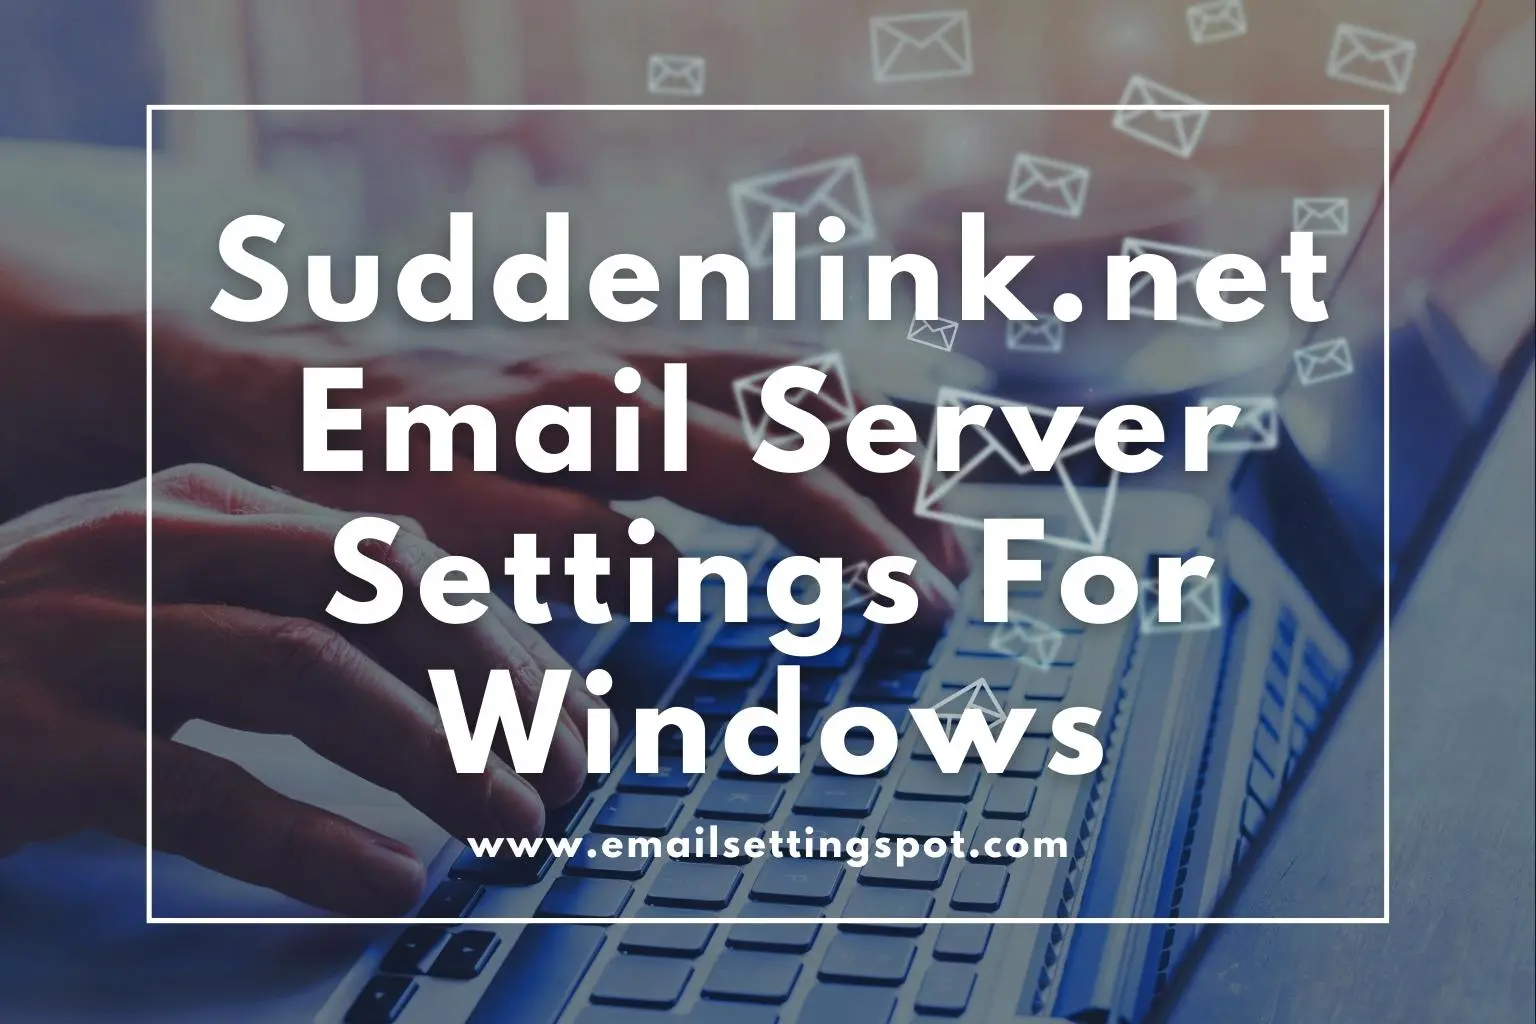 suddenlink.net email Settings for Windows